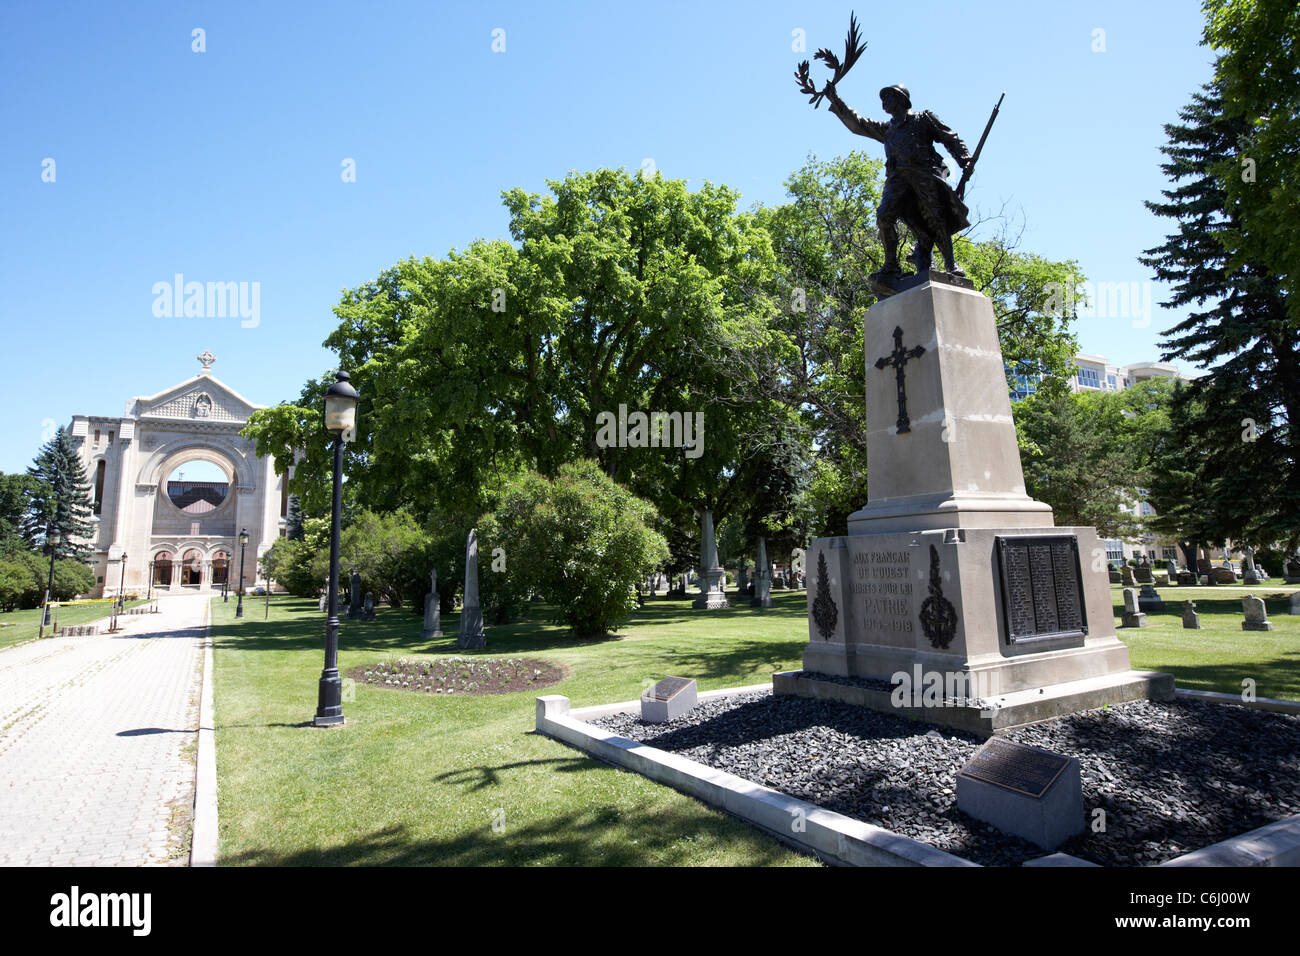 Mémorial de la première guerre mondiale dans l'enceinte de la cathédrale de Saint-Boniface Winnipeg Manitoba canada quartier français Banque D'Images